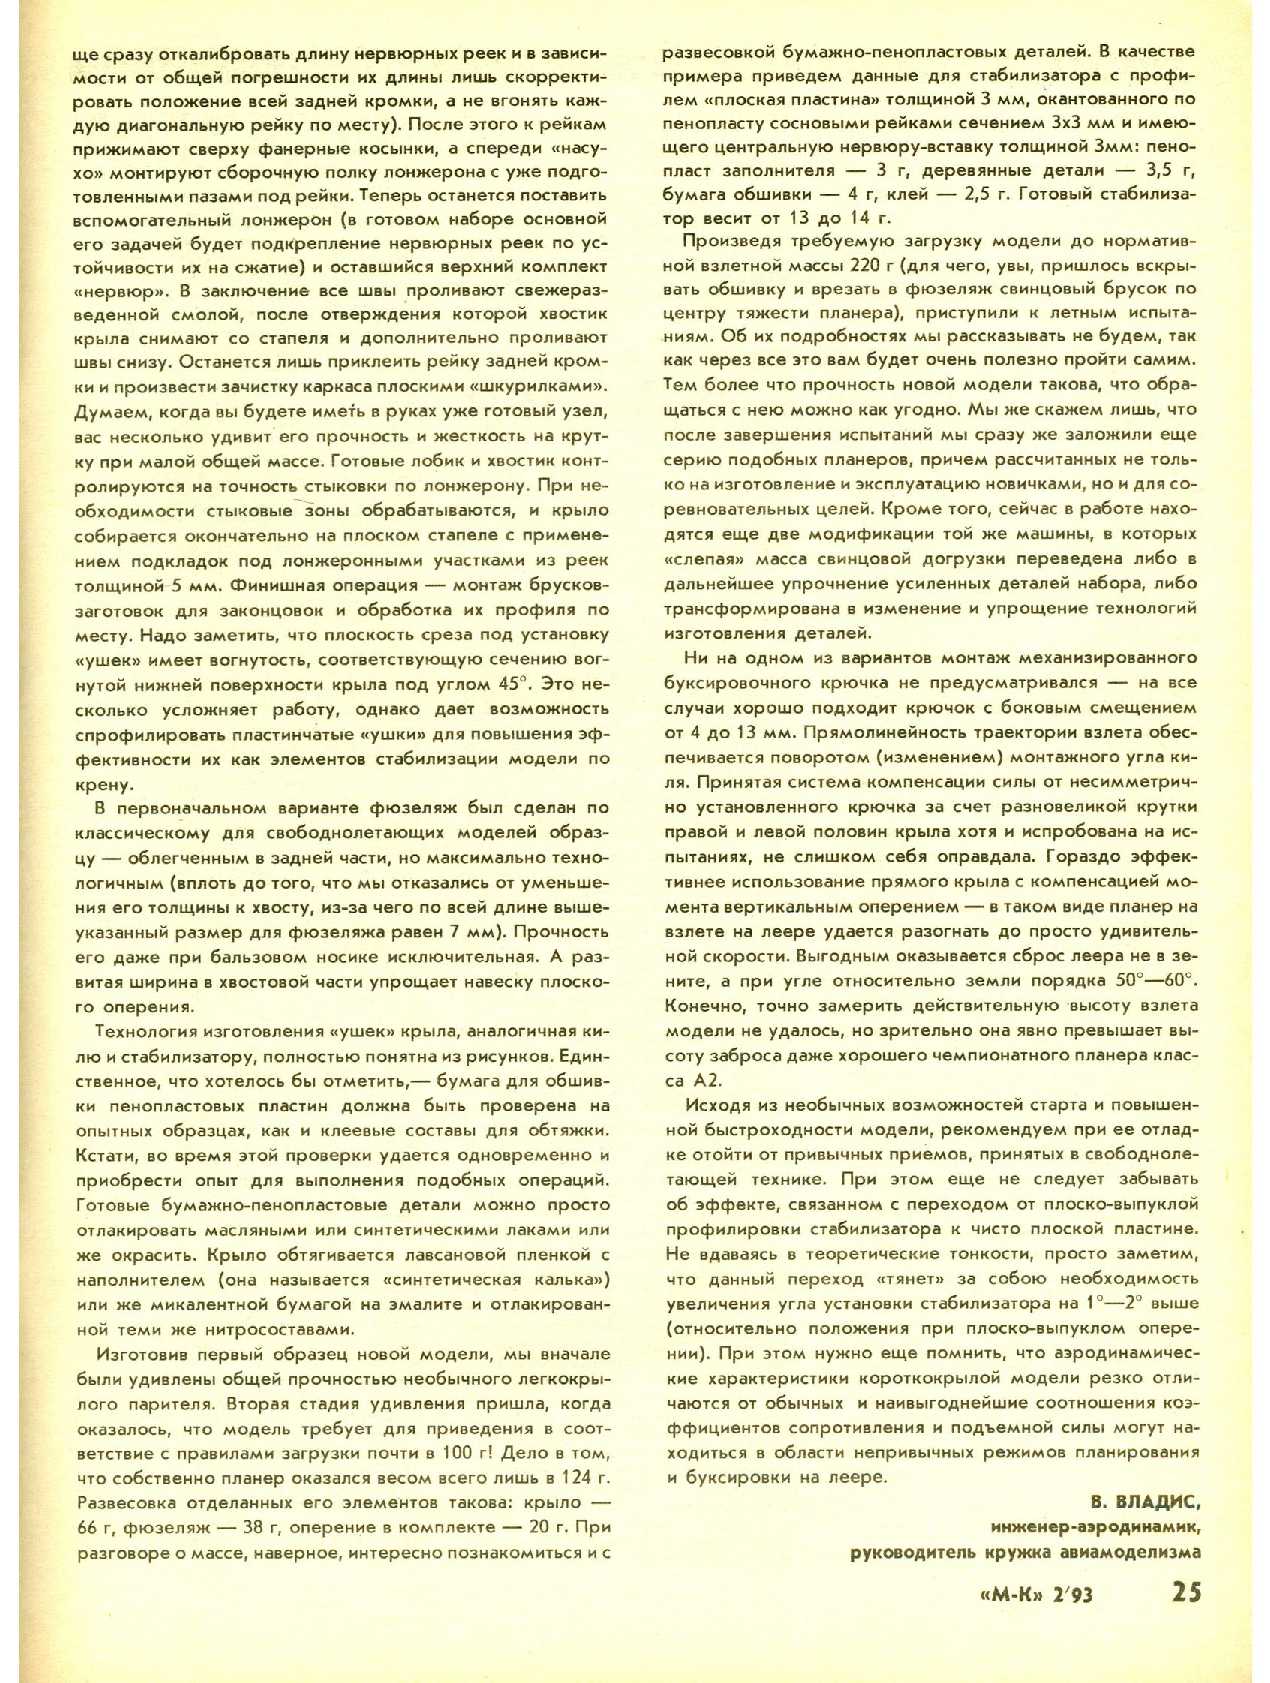 МК 2, 1993, 25 c.